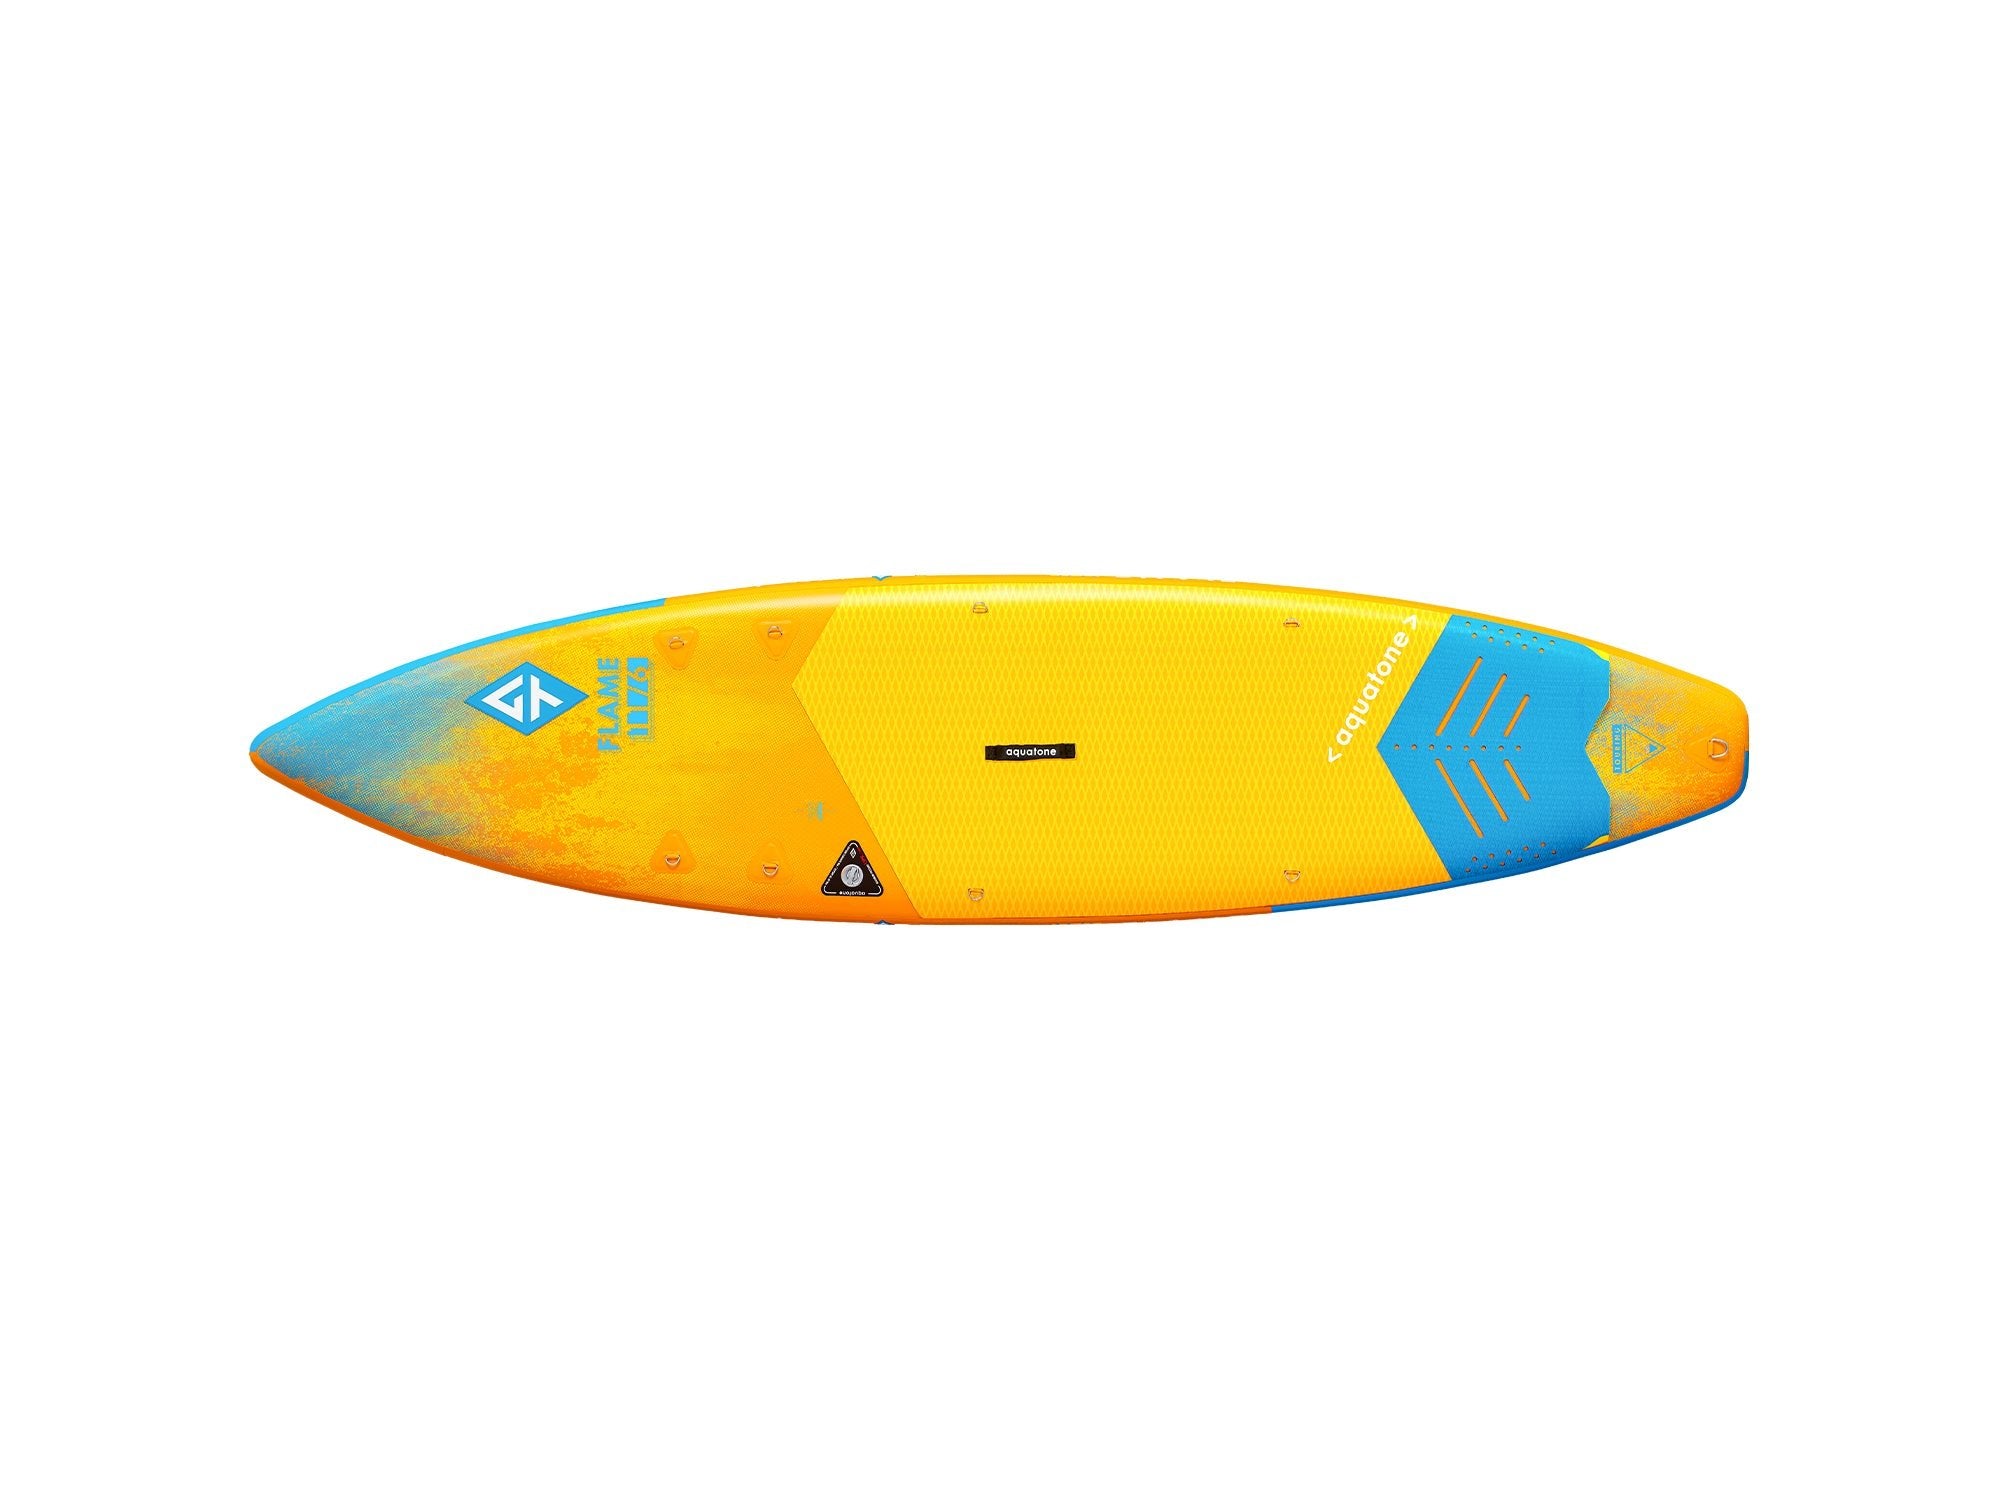 Aquatone 11' 6" Flame Touring SUP-Paddleboards-Aquatone-2